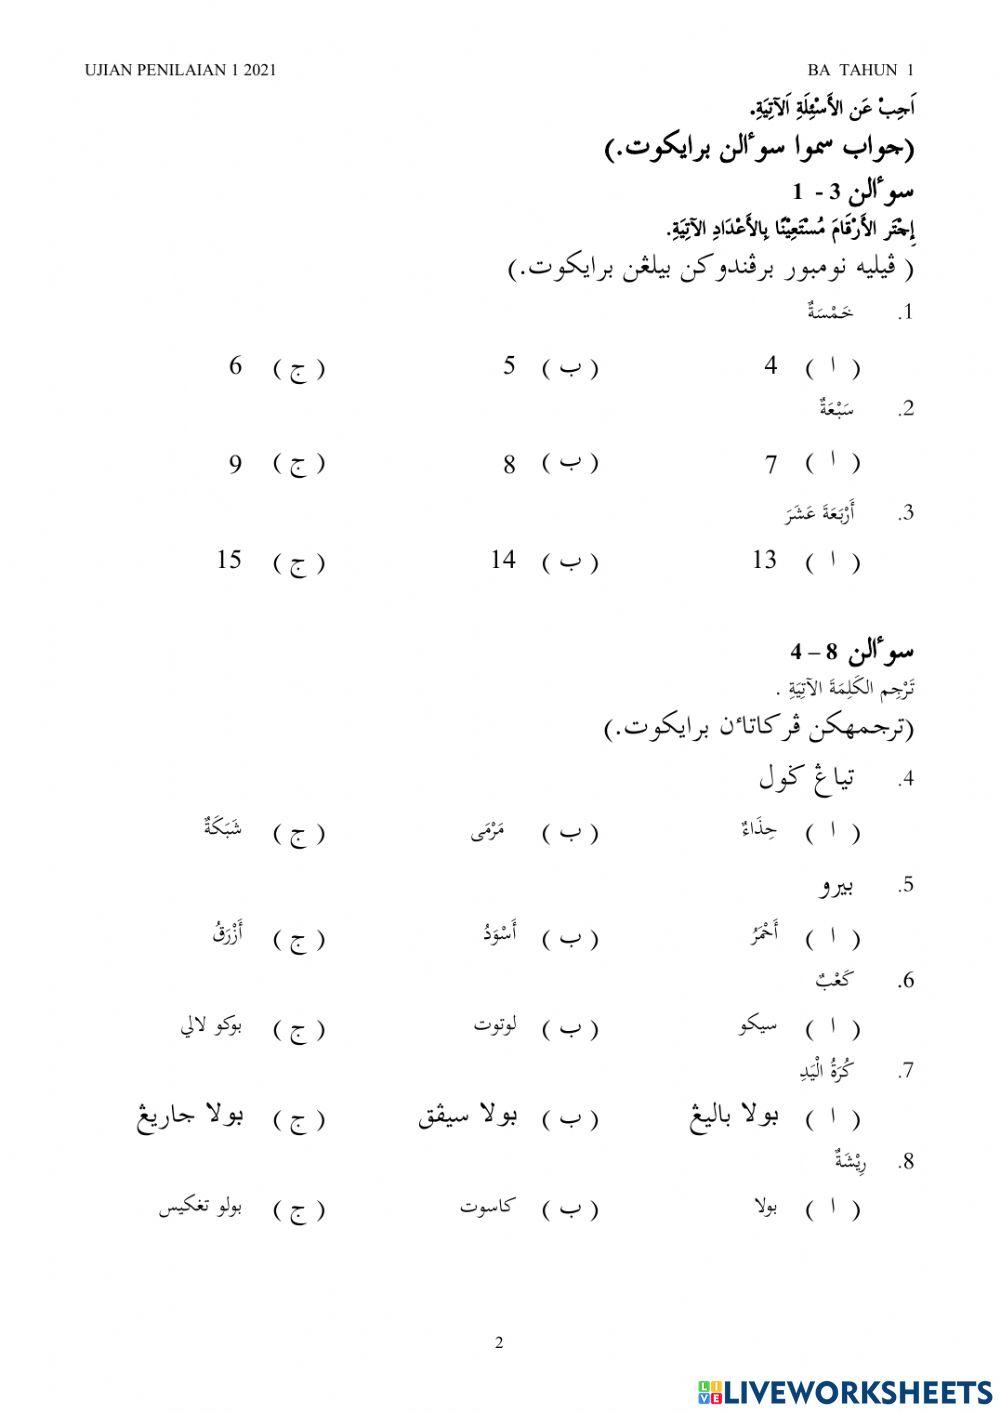 Ujian penilaian bahasa arab tahun 1